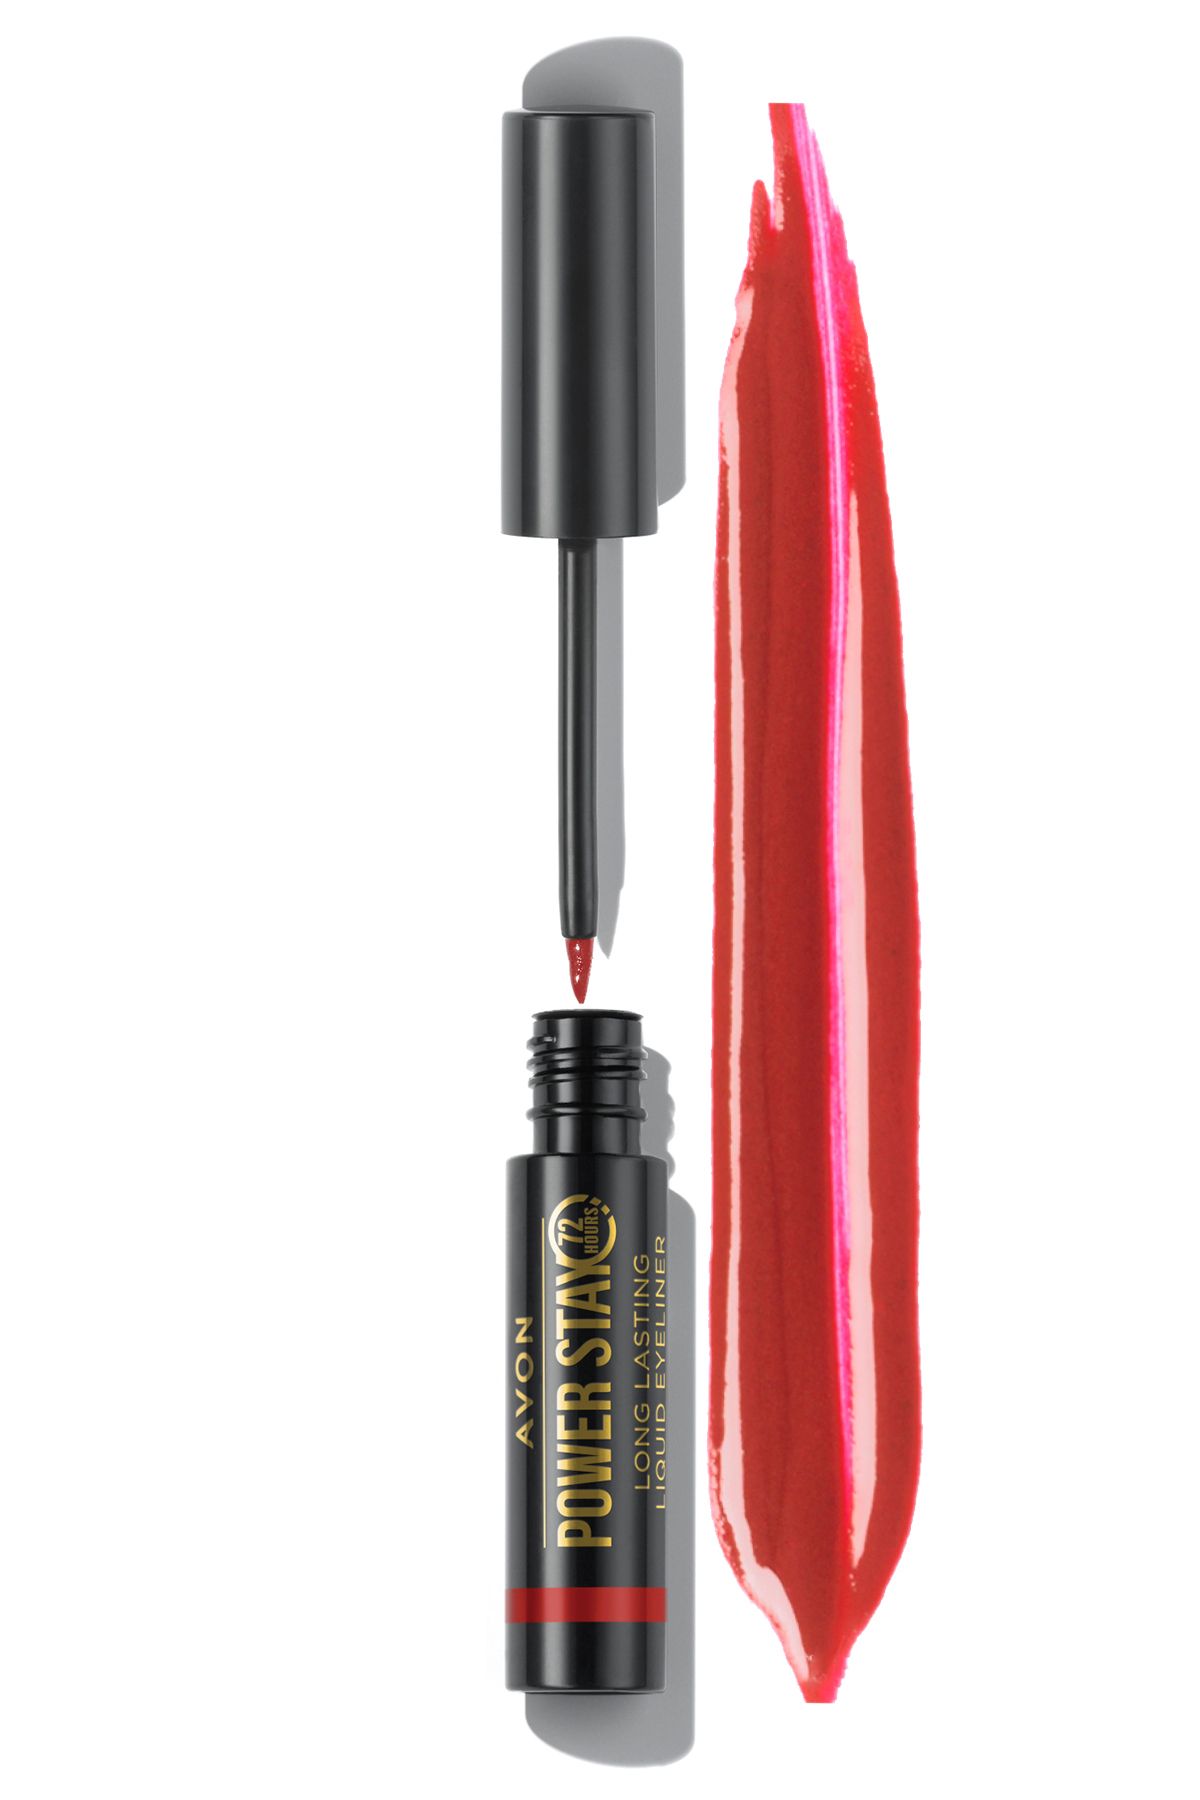 Avon Power Stay Uzun Süre Kalıcı Likit Eyeliner Cherry Red